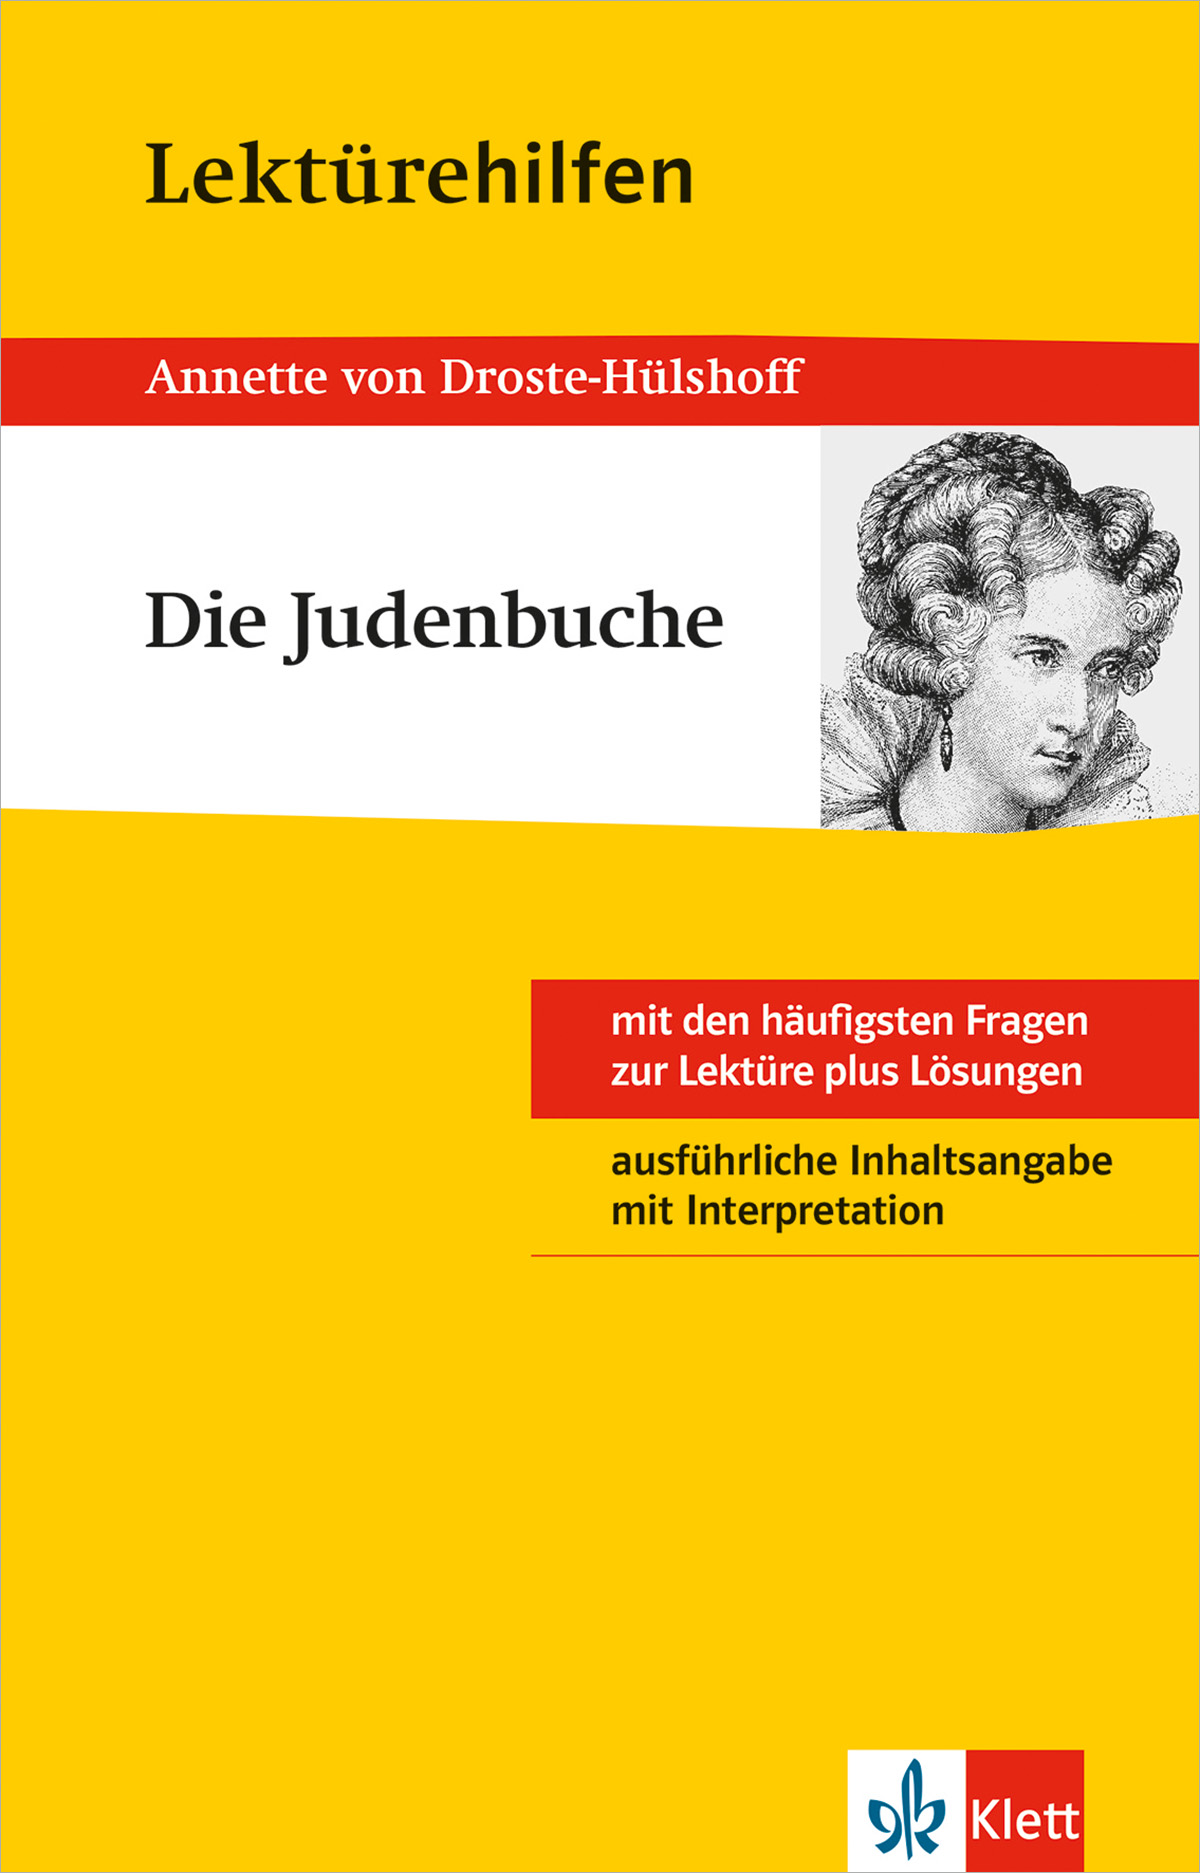 Klett Lektürehilfen Annette von Droste-Hülshoff, Die Judenbuche